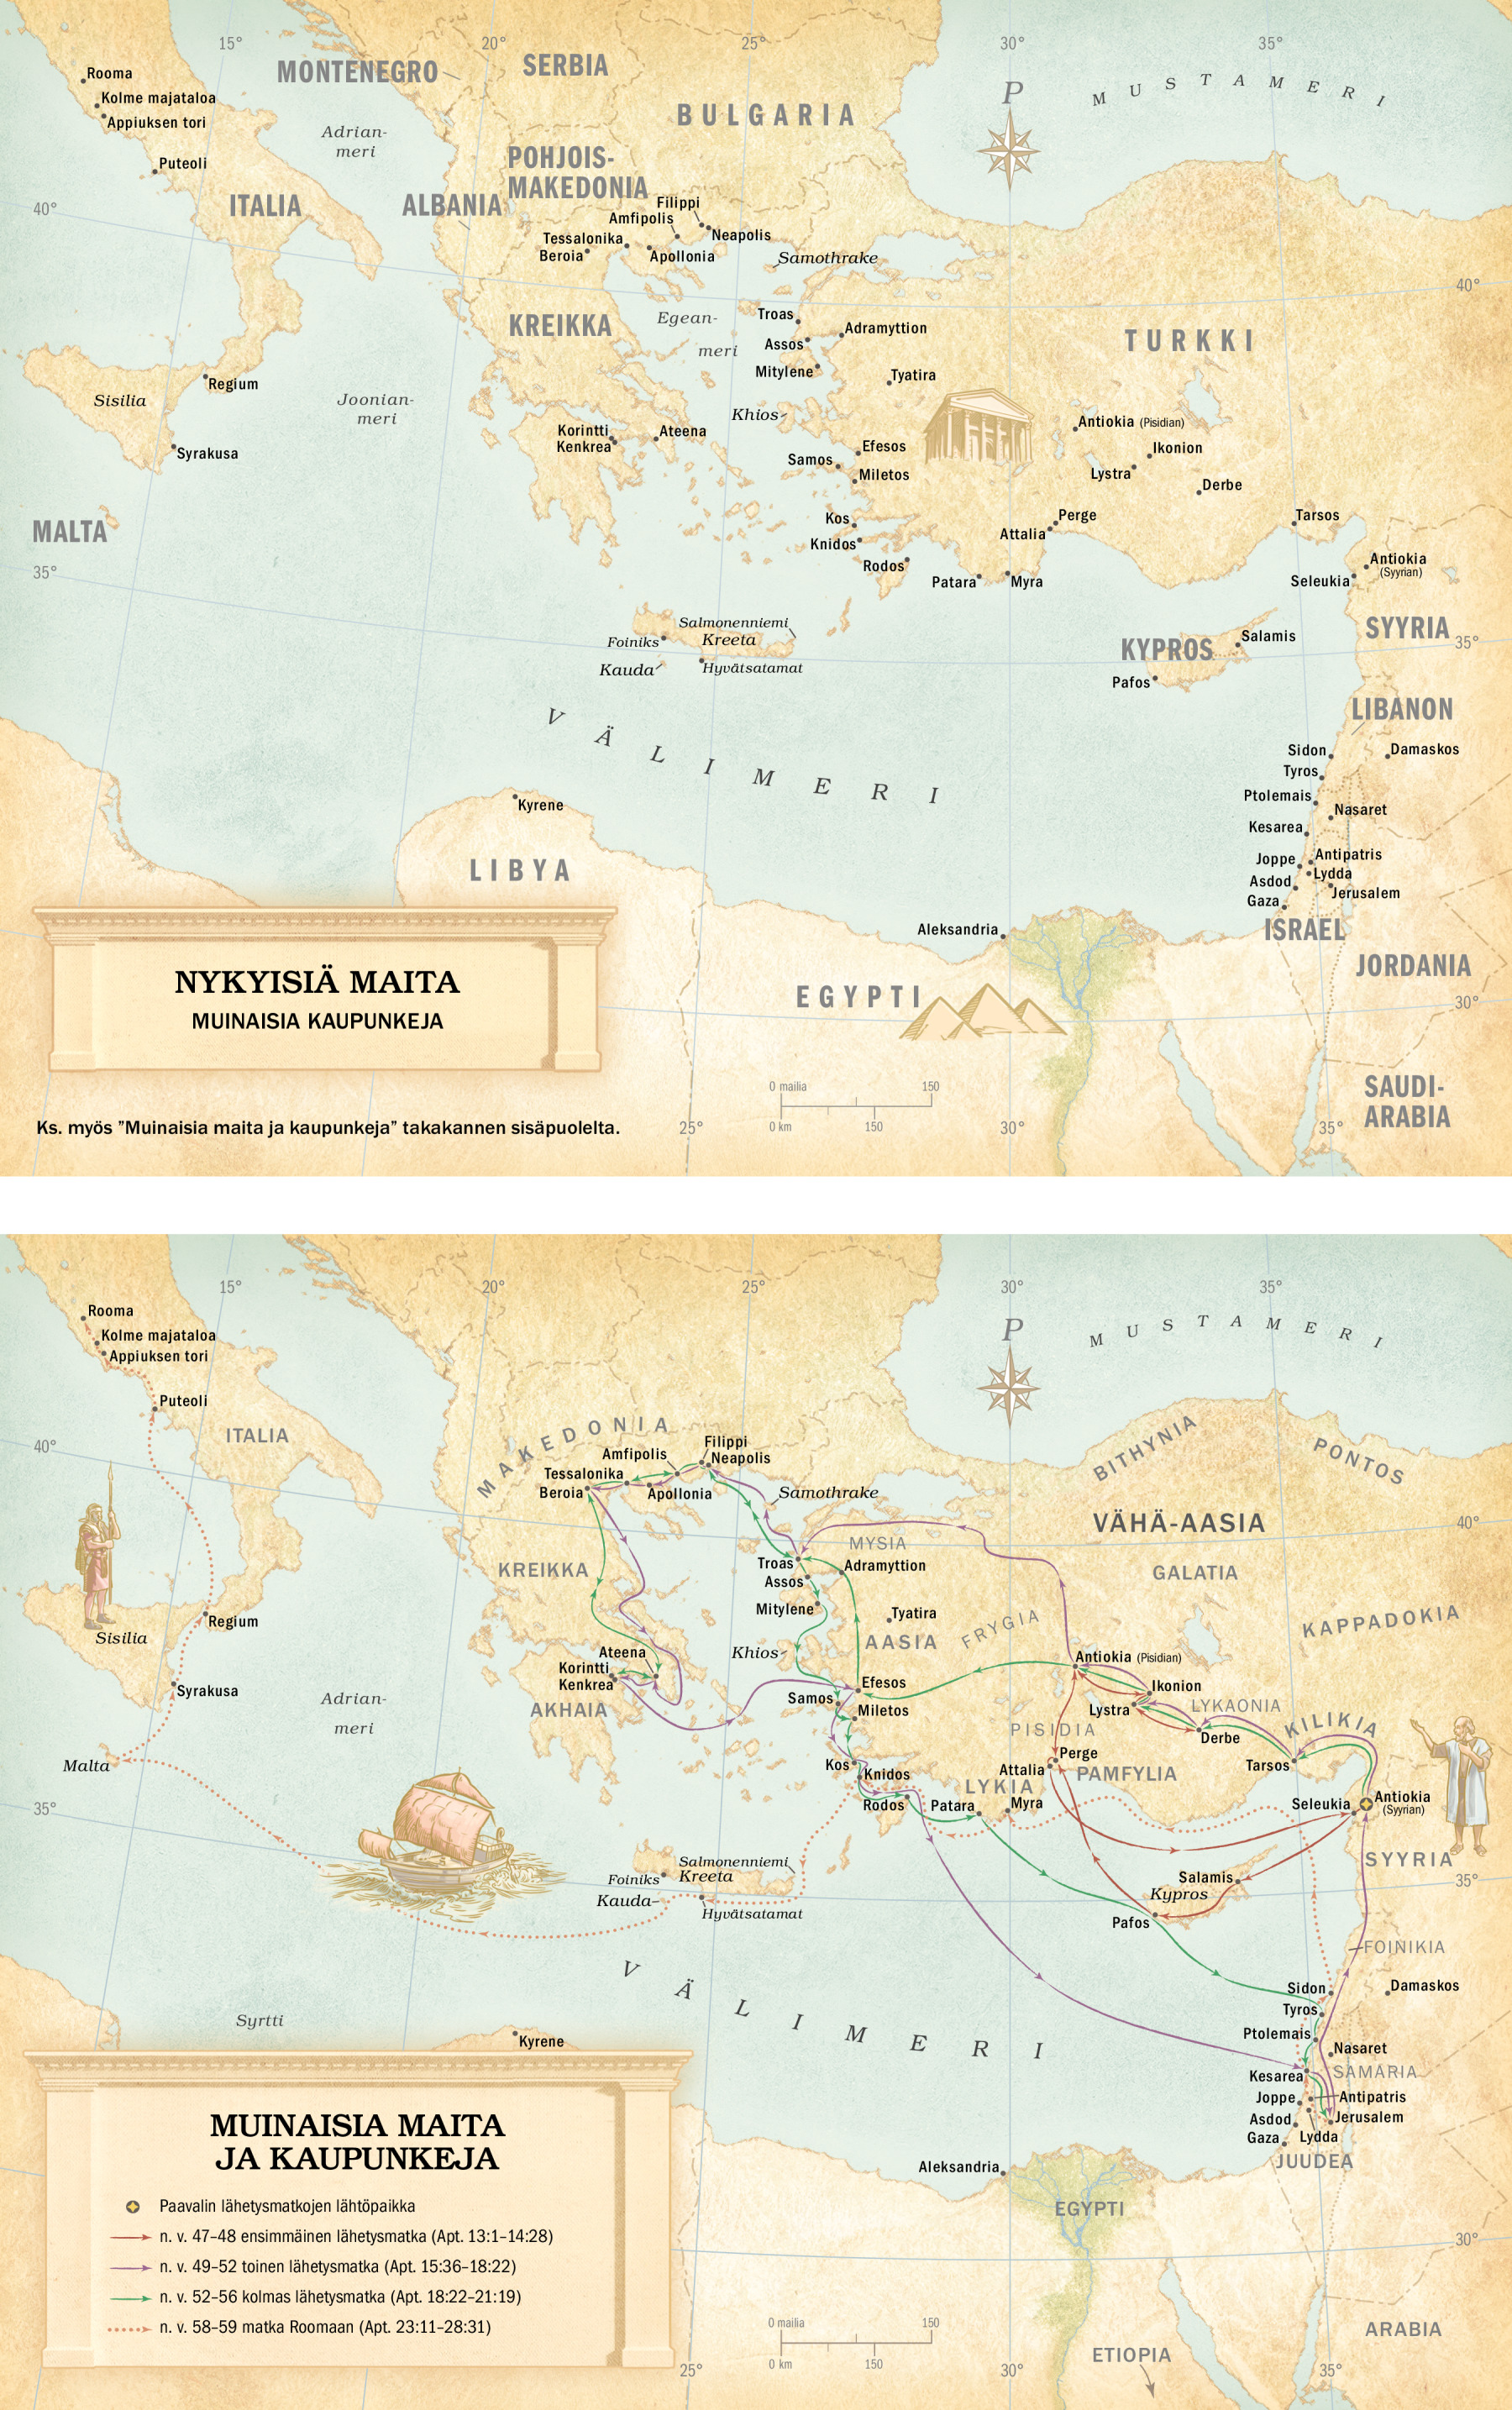 Kartat – muinaiset kaupungit ja Paavalin lähetysmatkat